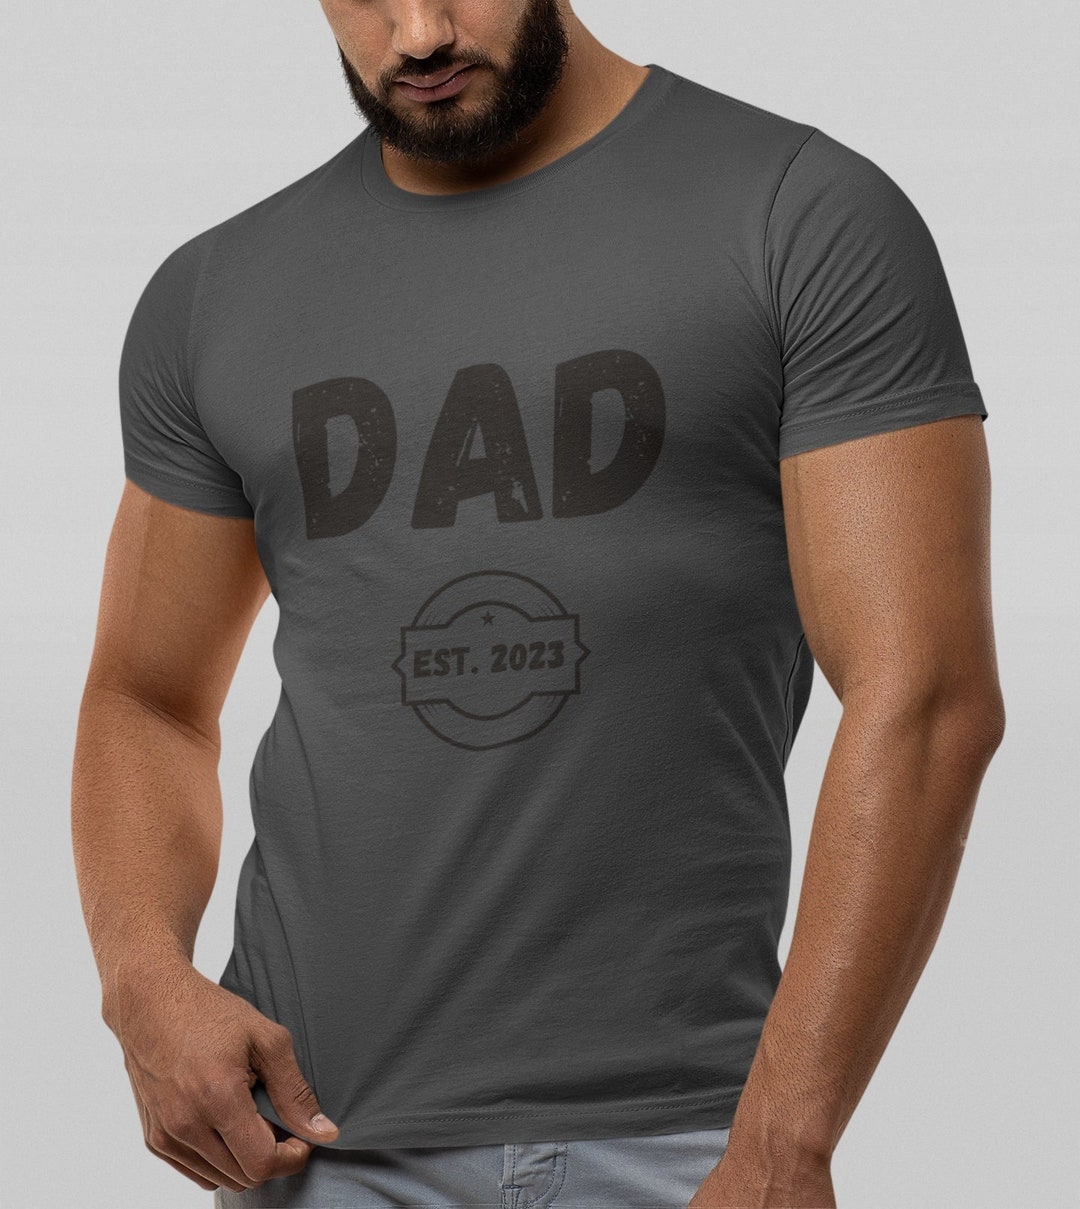 Dad EST. 2023 T-shirt Pregnancy Announcement for Man Shirt - Etsy